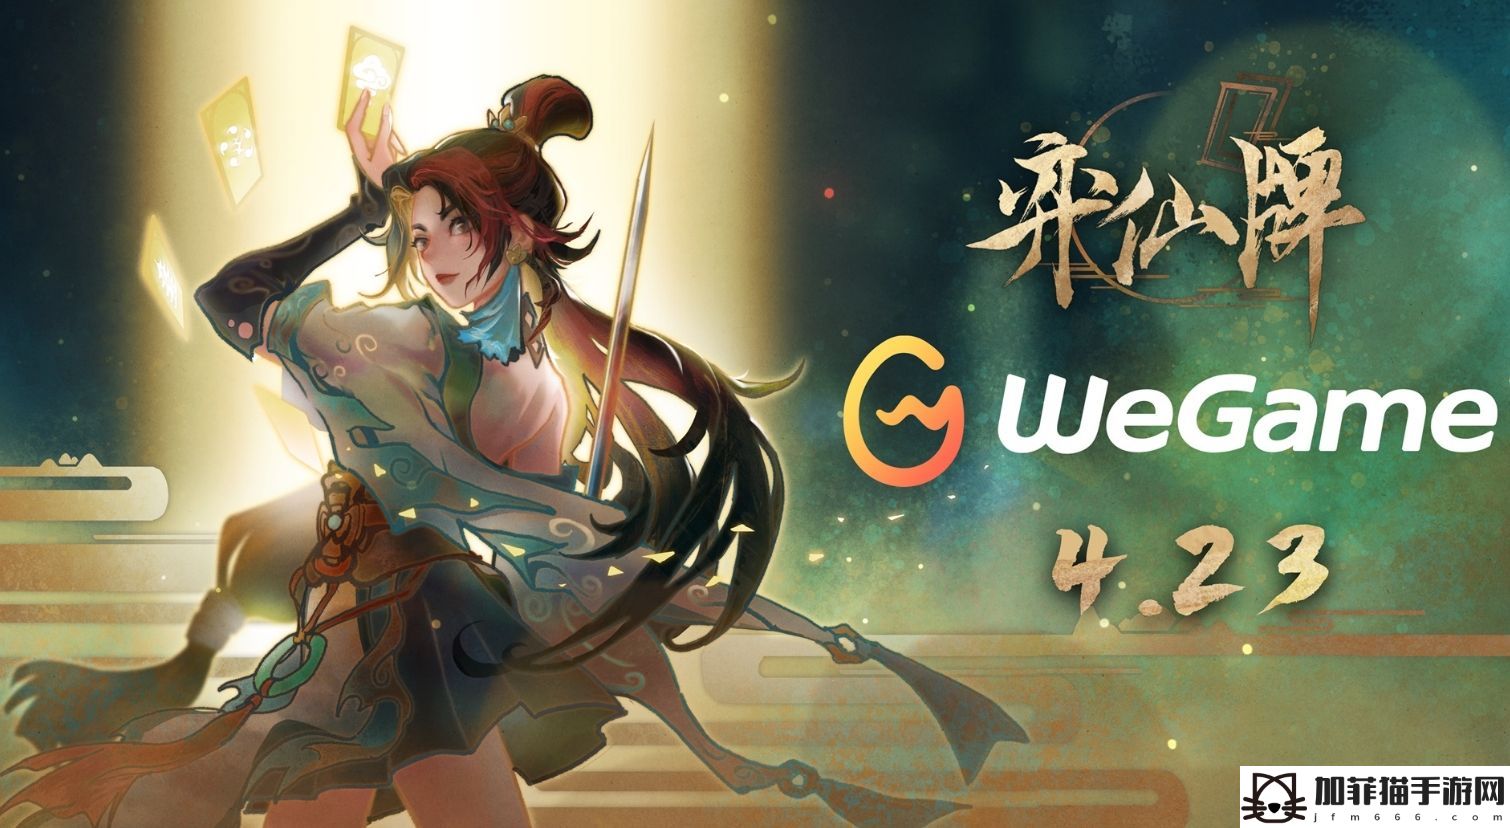 《弈仙牌》4月23日正式登陆WeGame!修仙卡牌对战新体验即将开启!